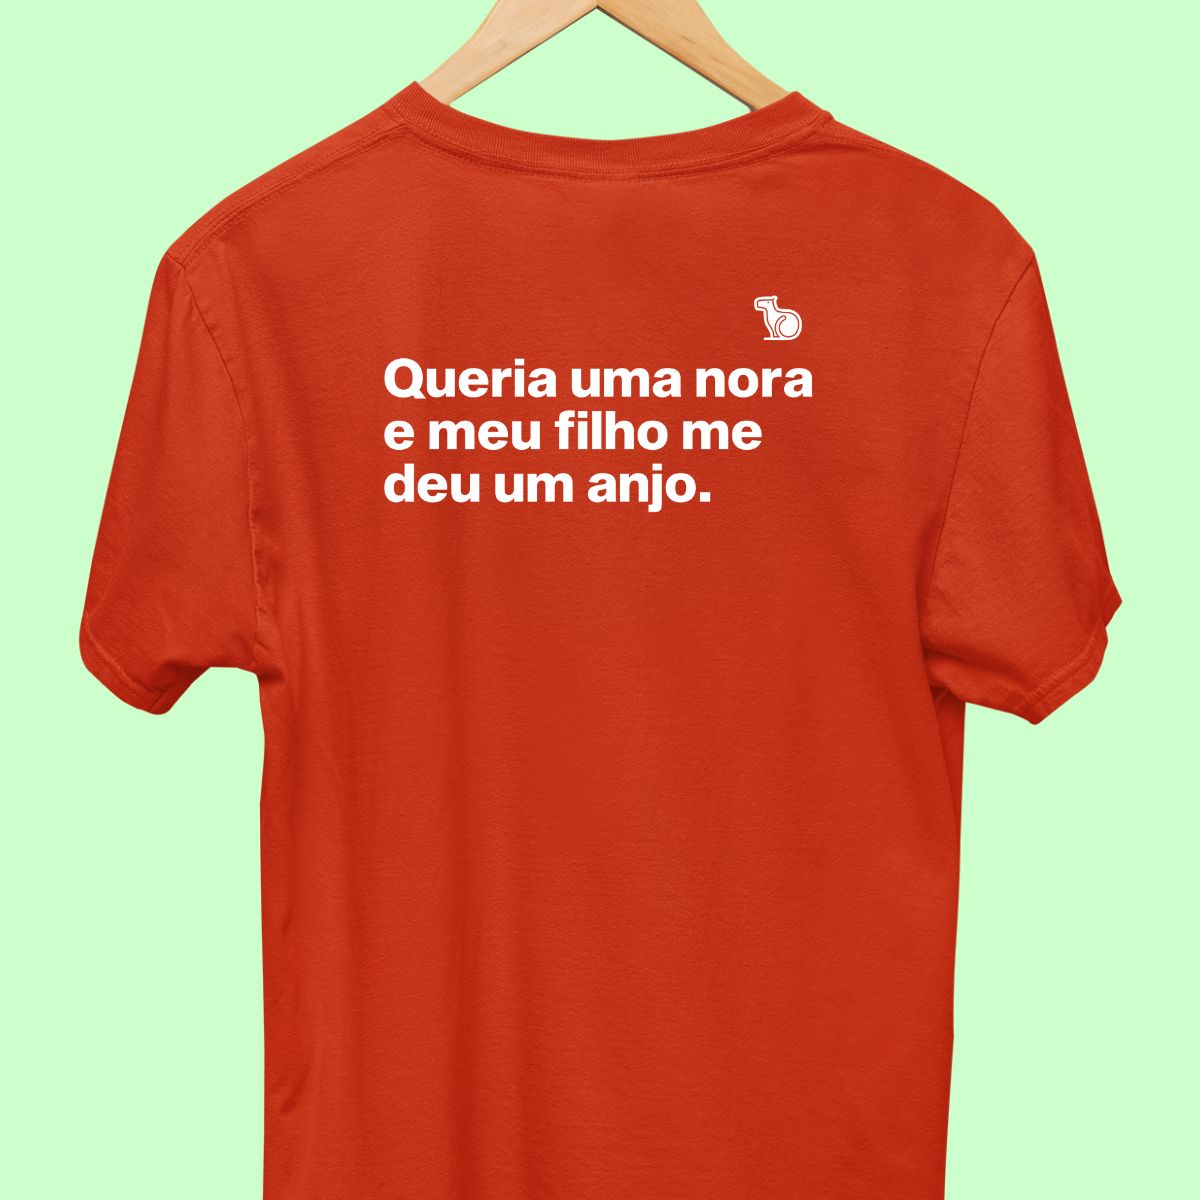 Camiseta com a frase "Queria uma nora e meu filho me deu um anjo." masculina vermelha.